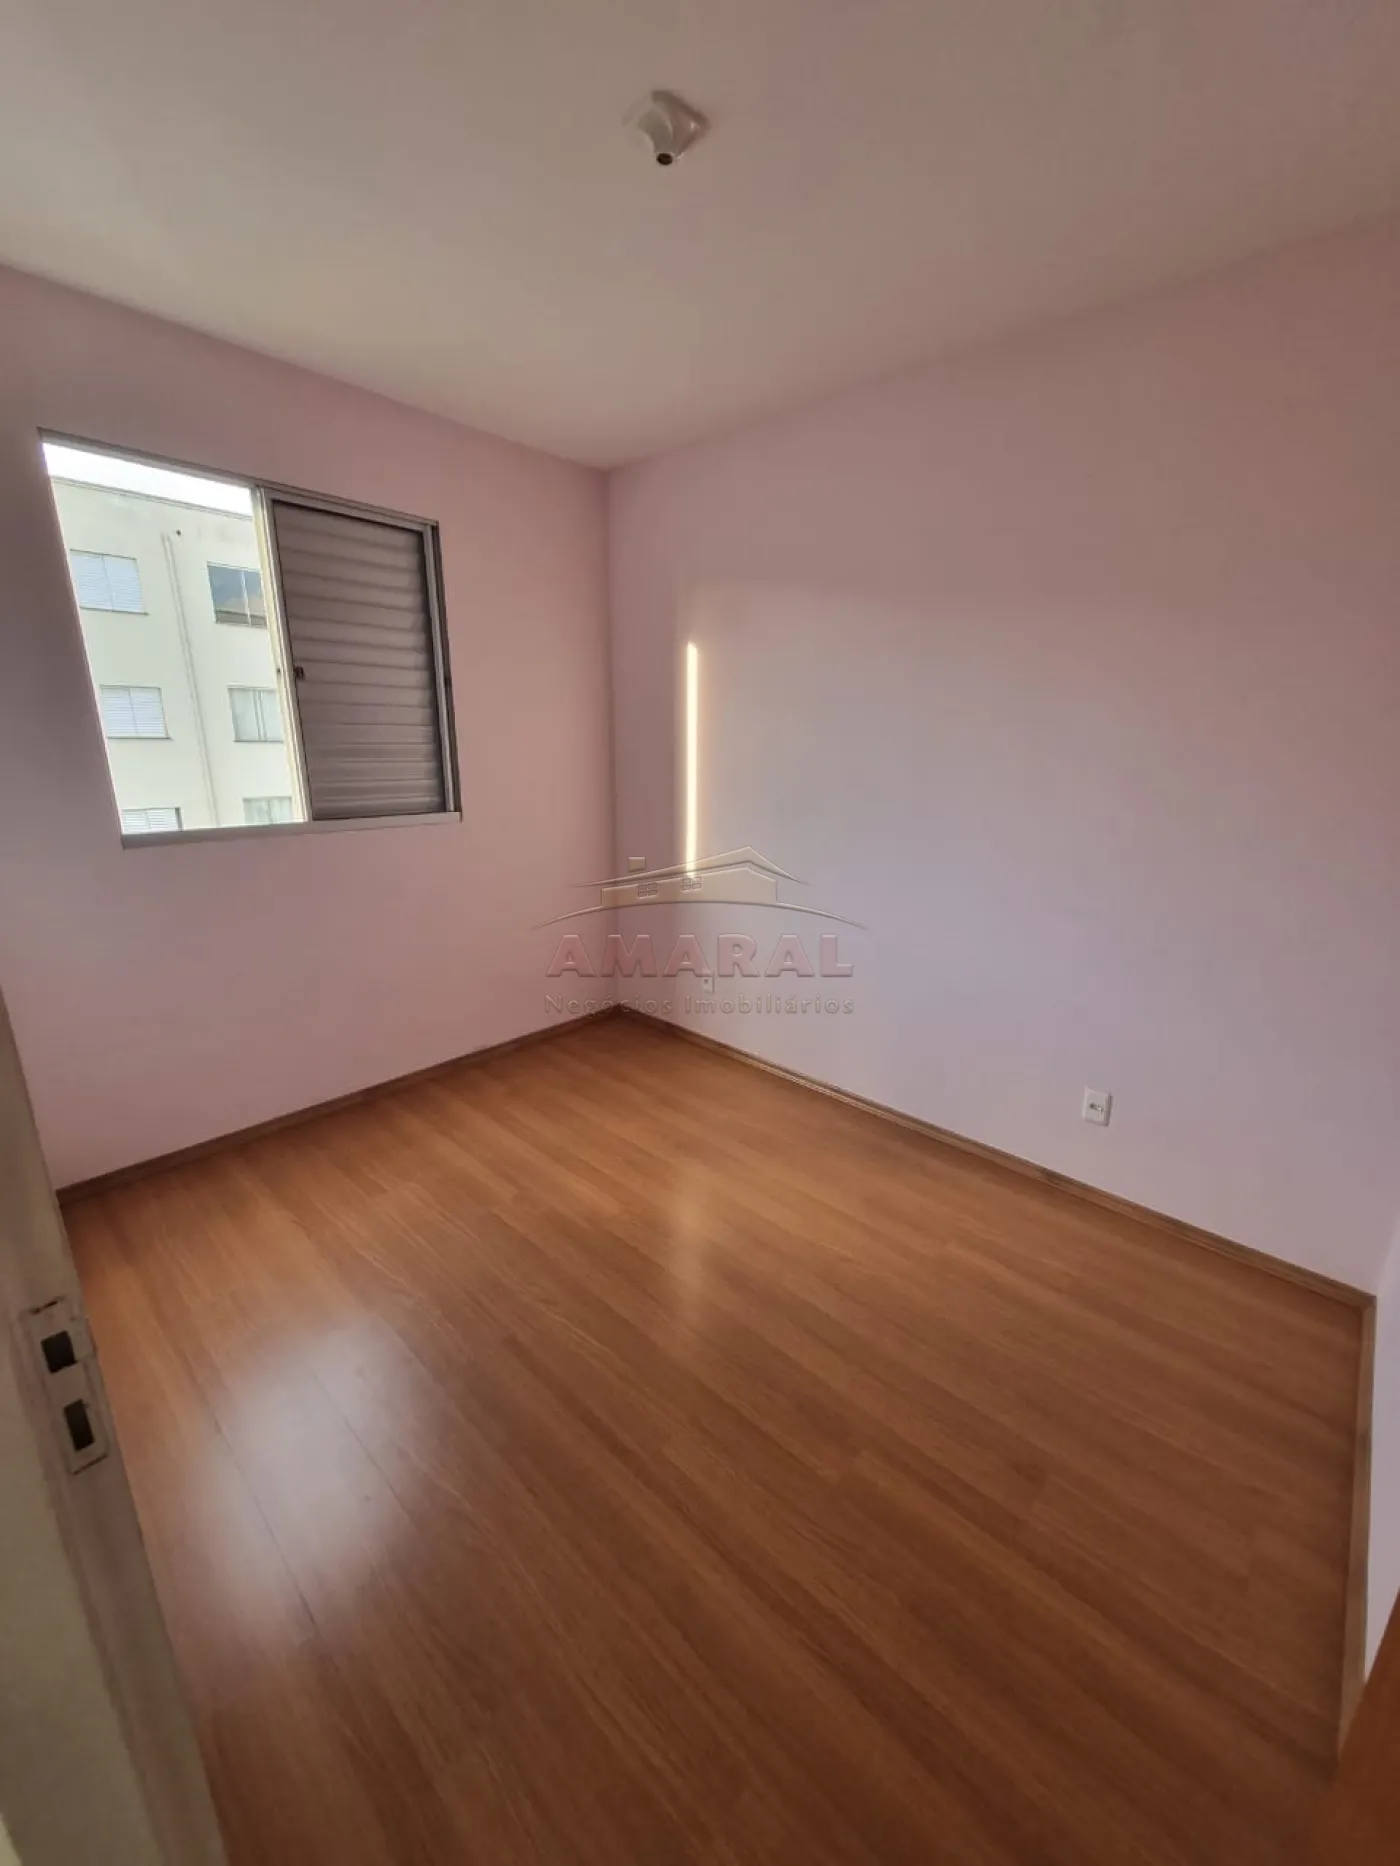 Alugar Apartamentos / Padrão em Suzano R$ 580,00 - Foto 16